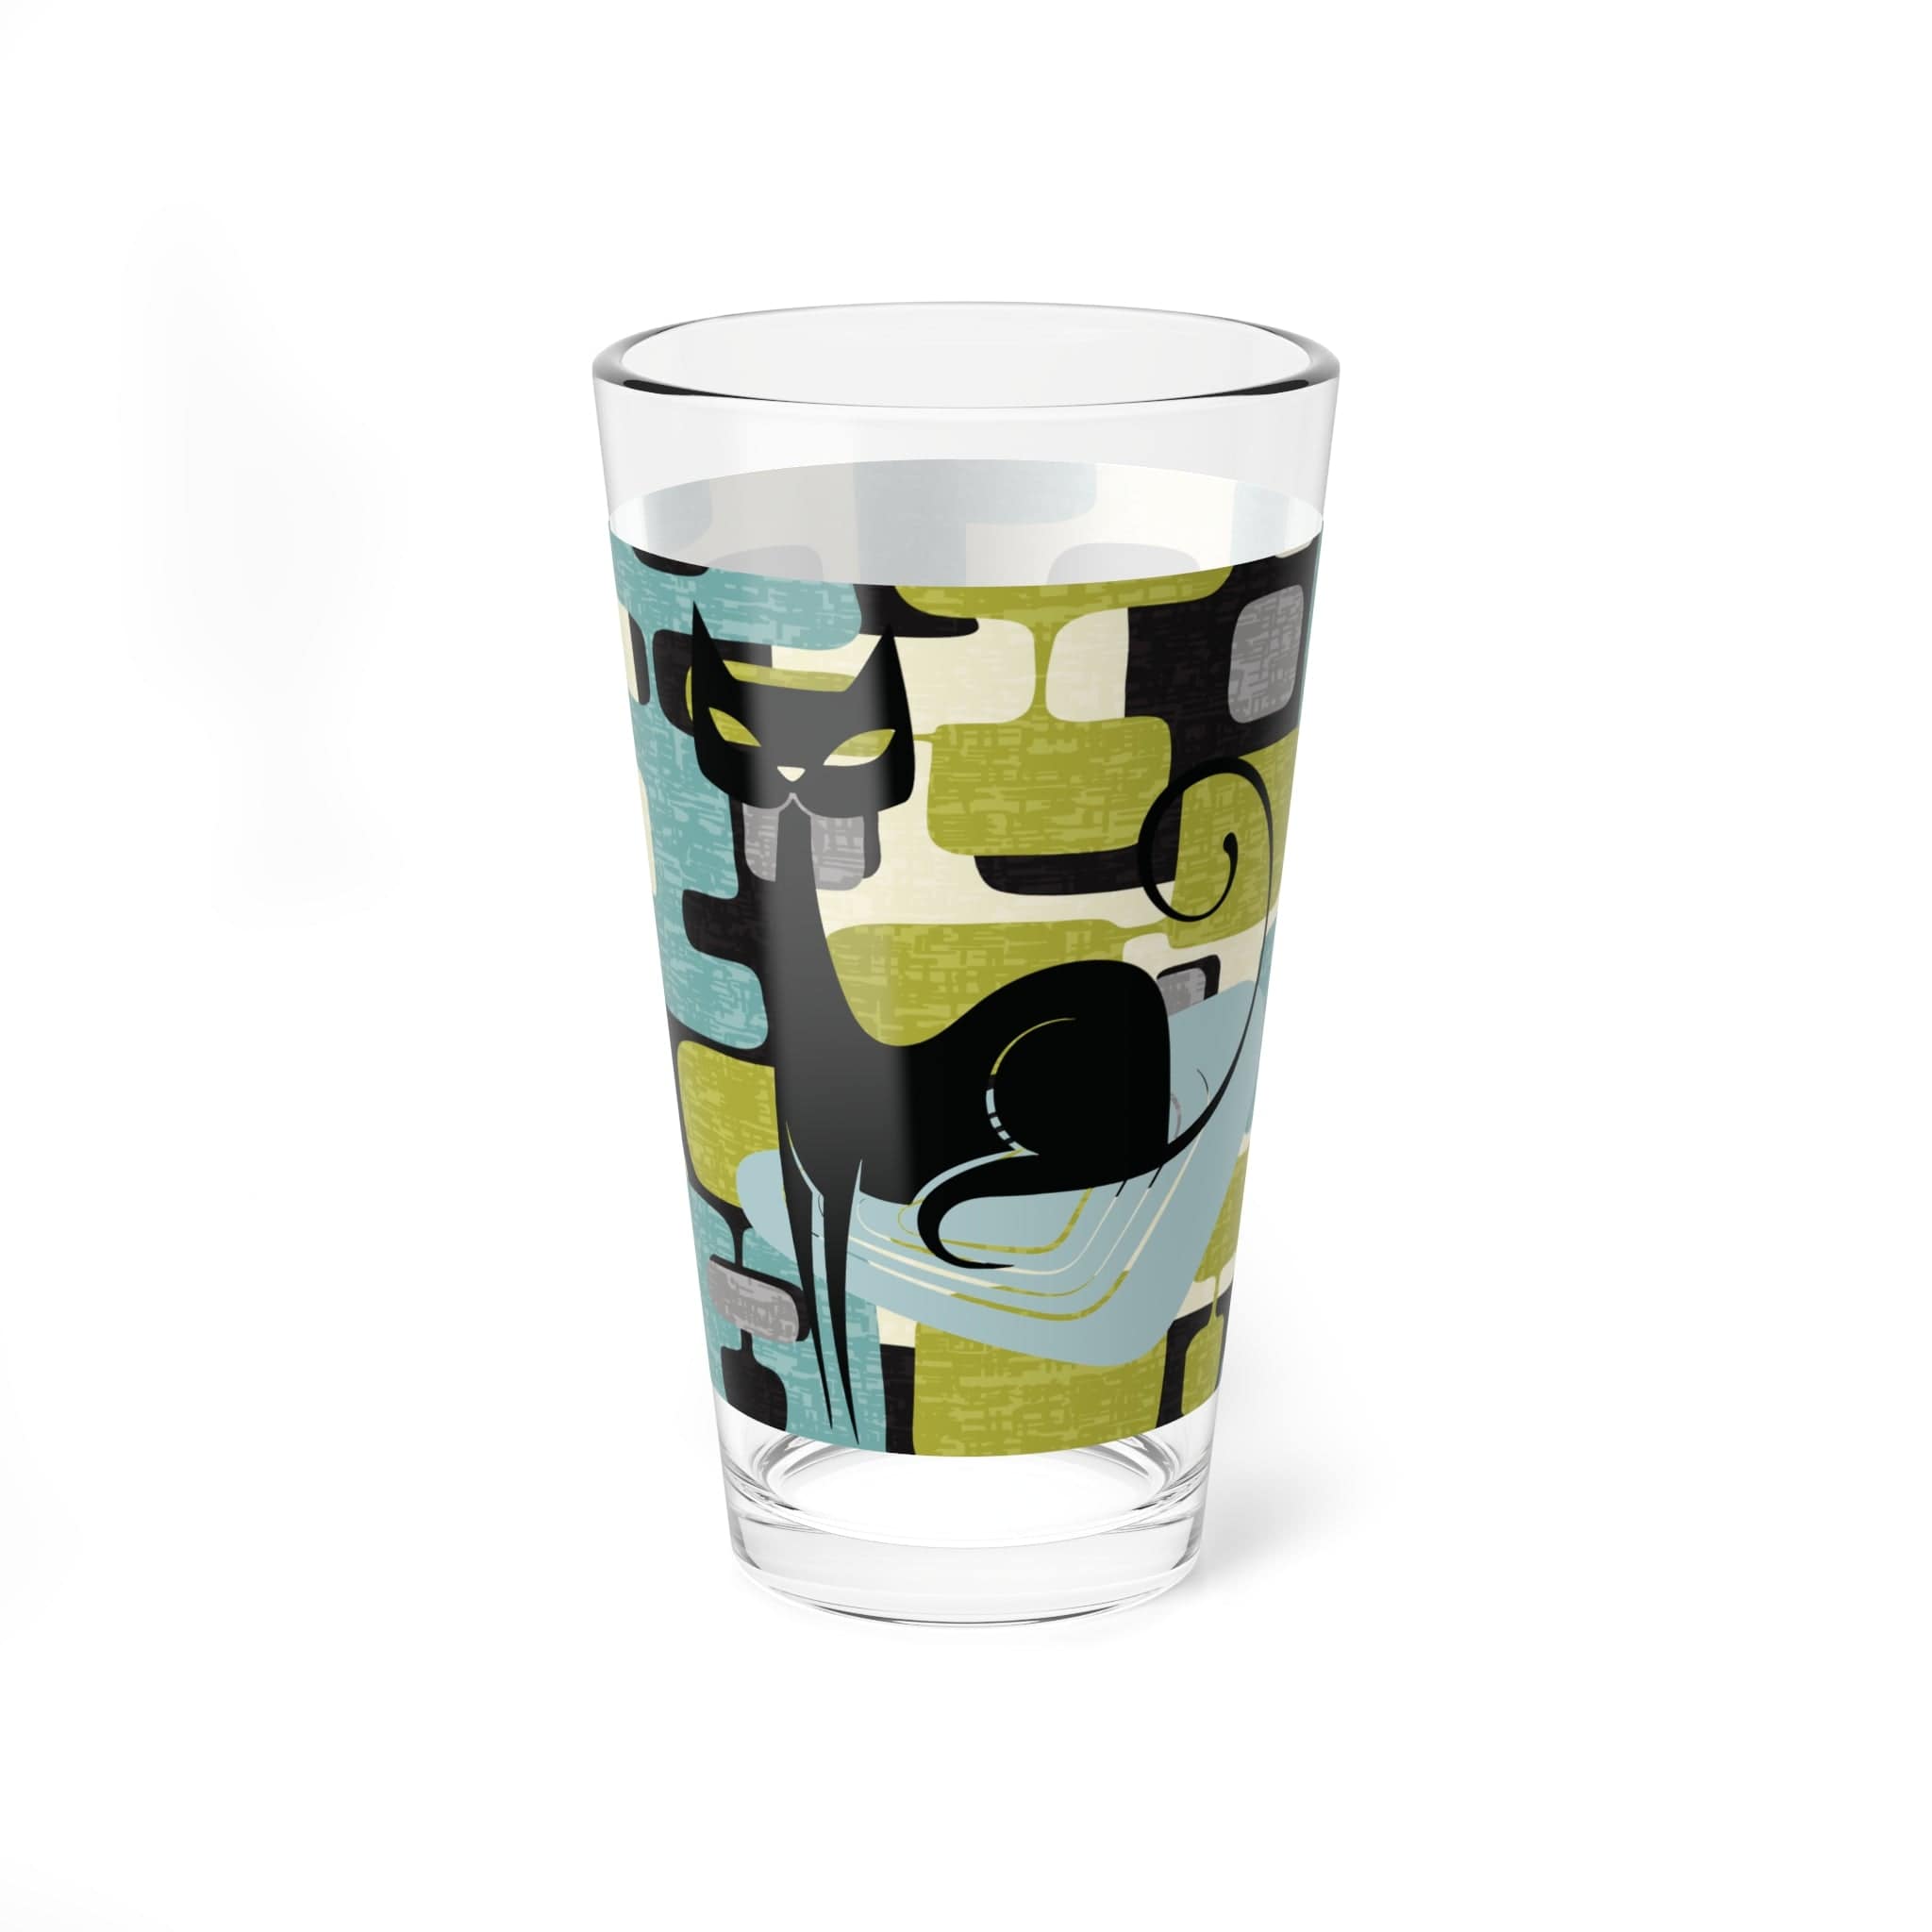 Kate McEnroe New York Retro Atomic Cat Cocktail Glass, Mid Century Modern Pint, Whimsical Drinking GlassMixing Glasses74729620422546502929